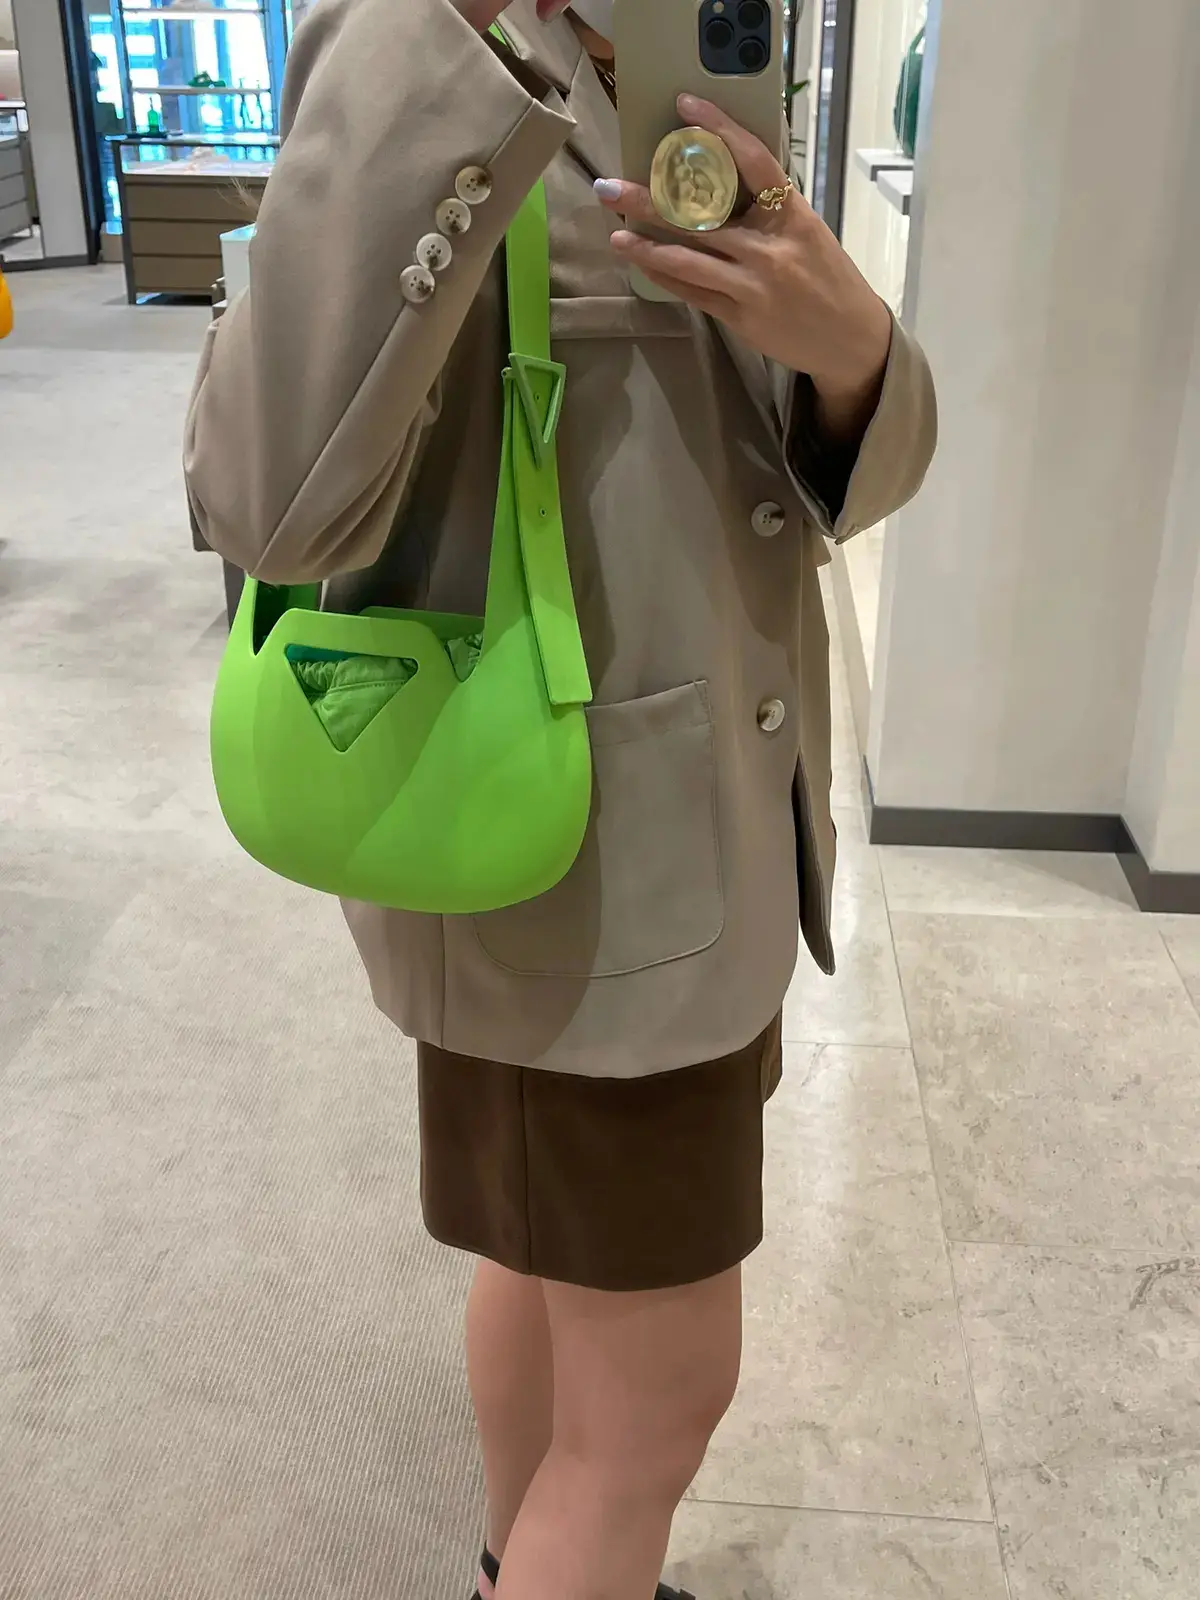 Bottega Veneta Light Green Woven Leather Medium Point Shoulder Bag